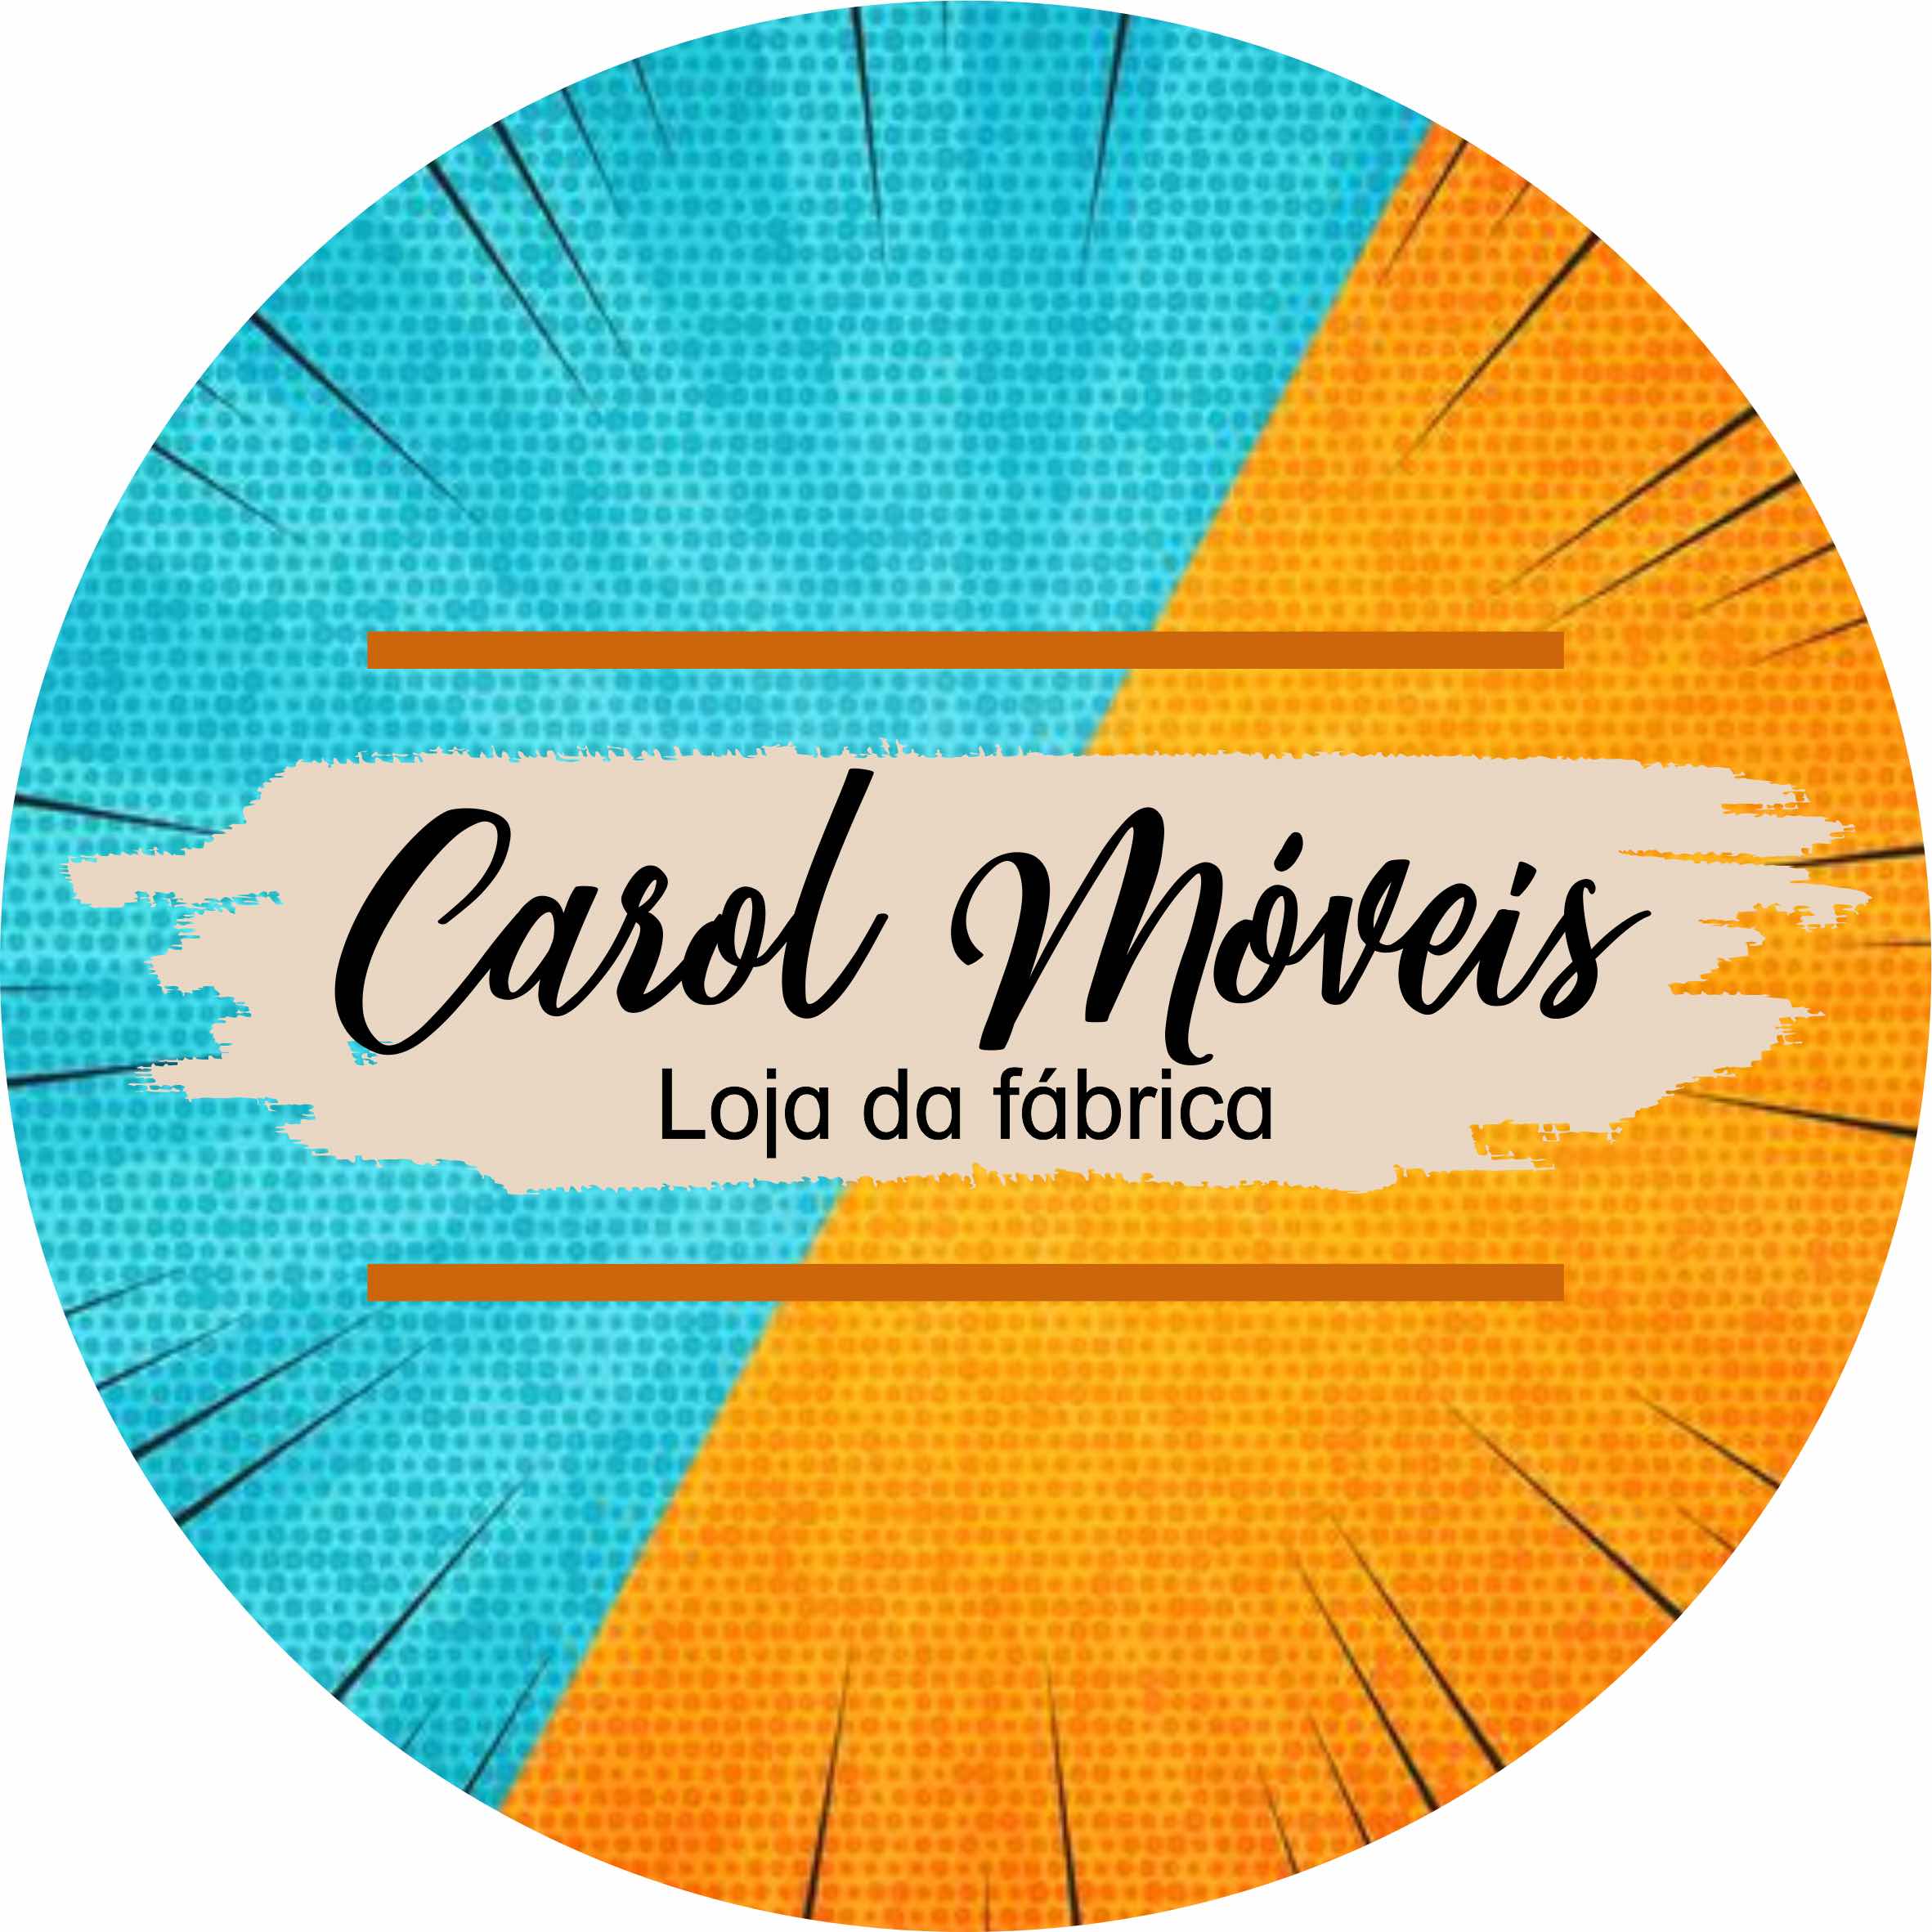 Carol moveis. CNPJ: 30.349.834/0001-78